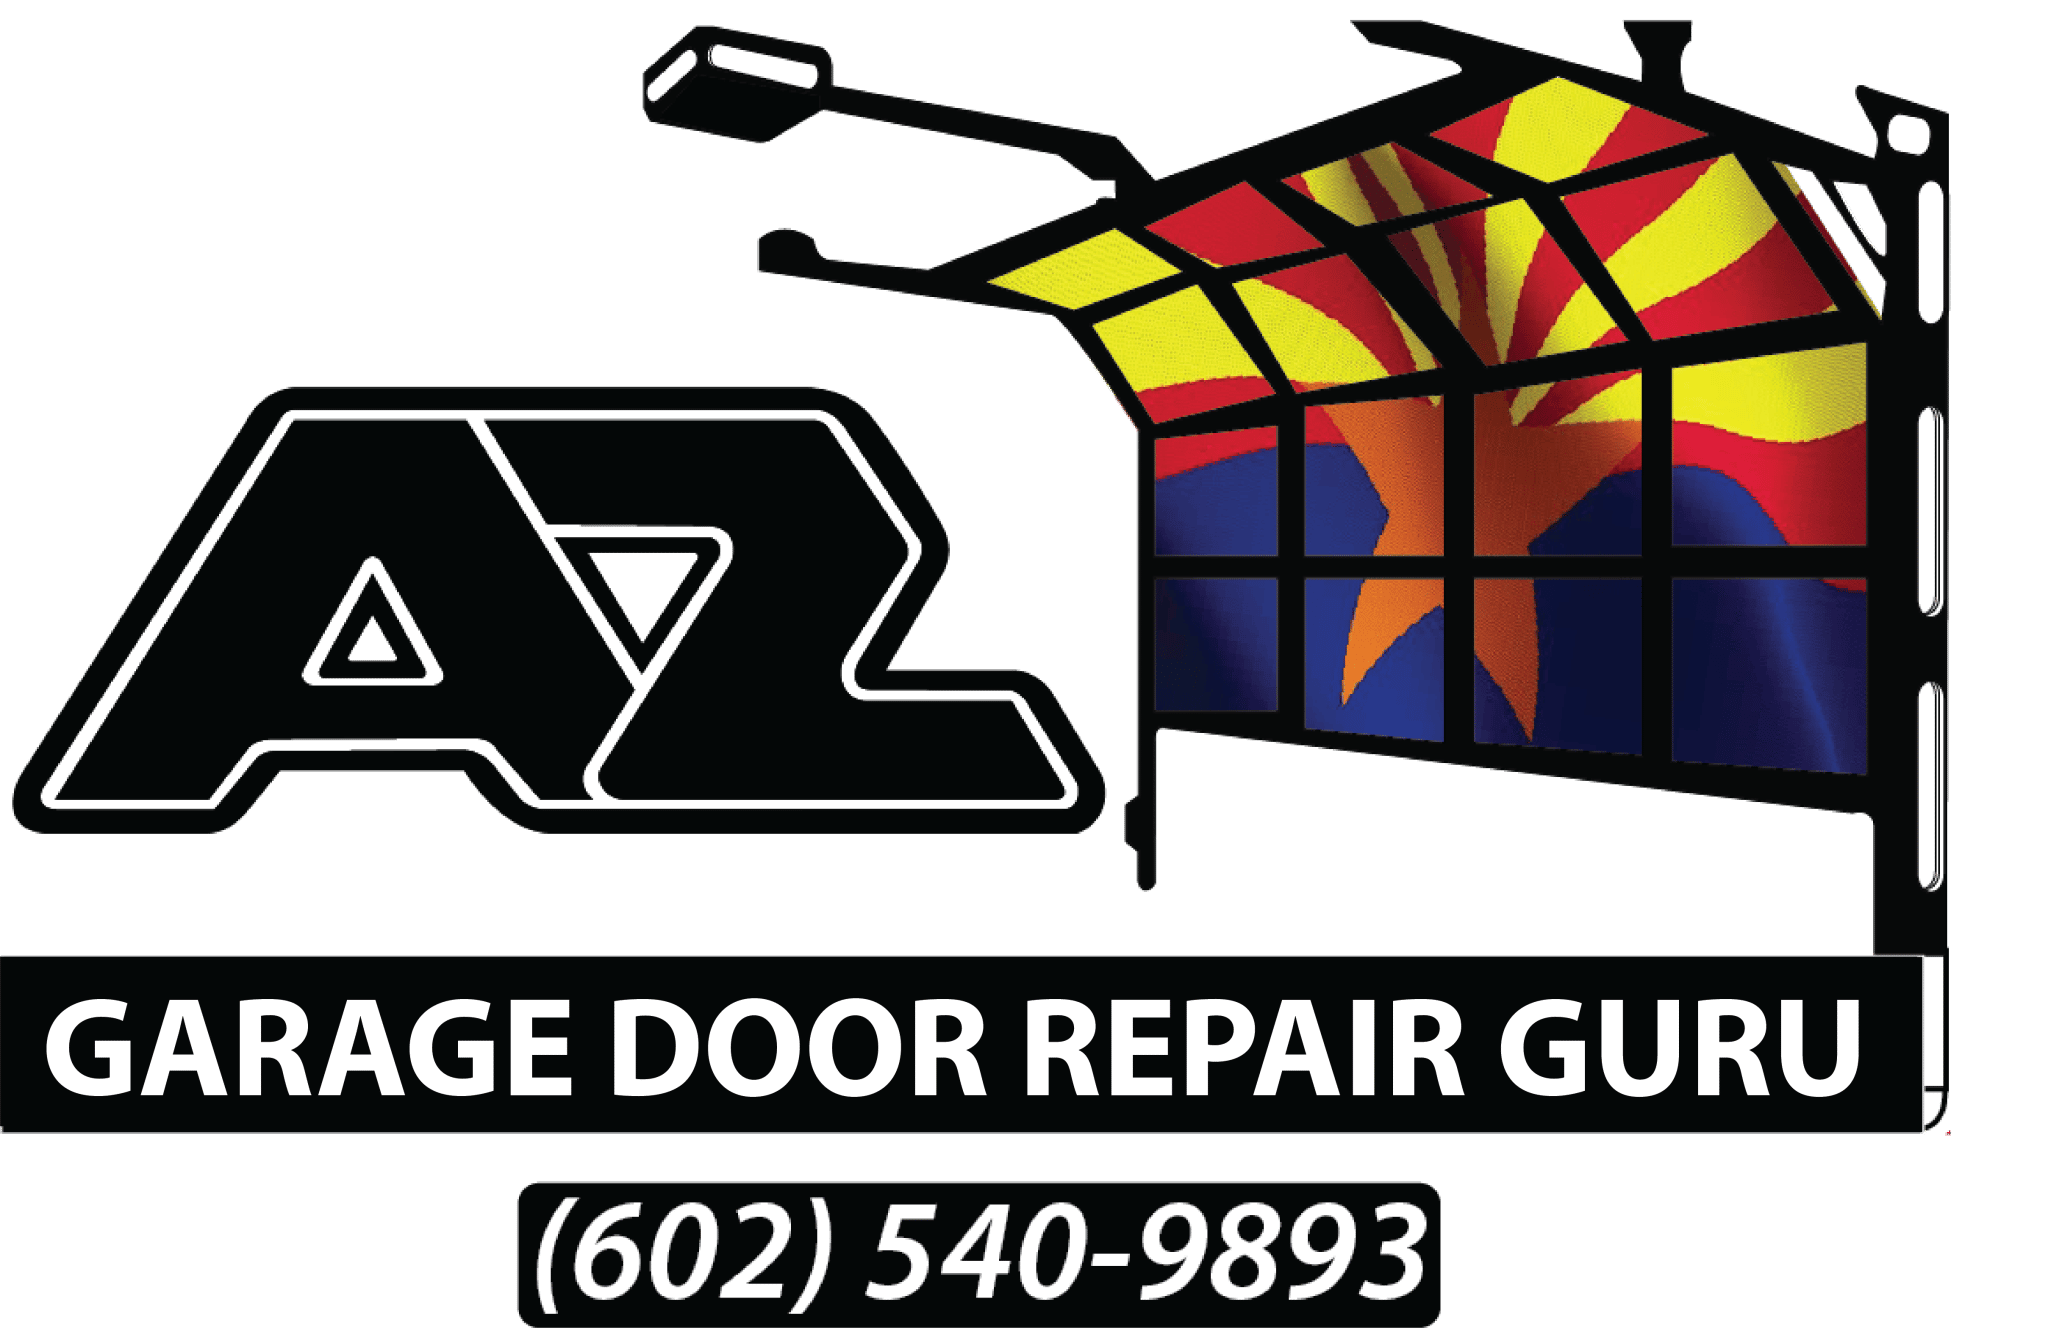 Garage door repair guru